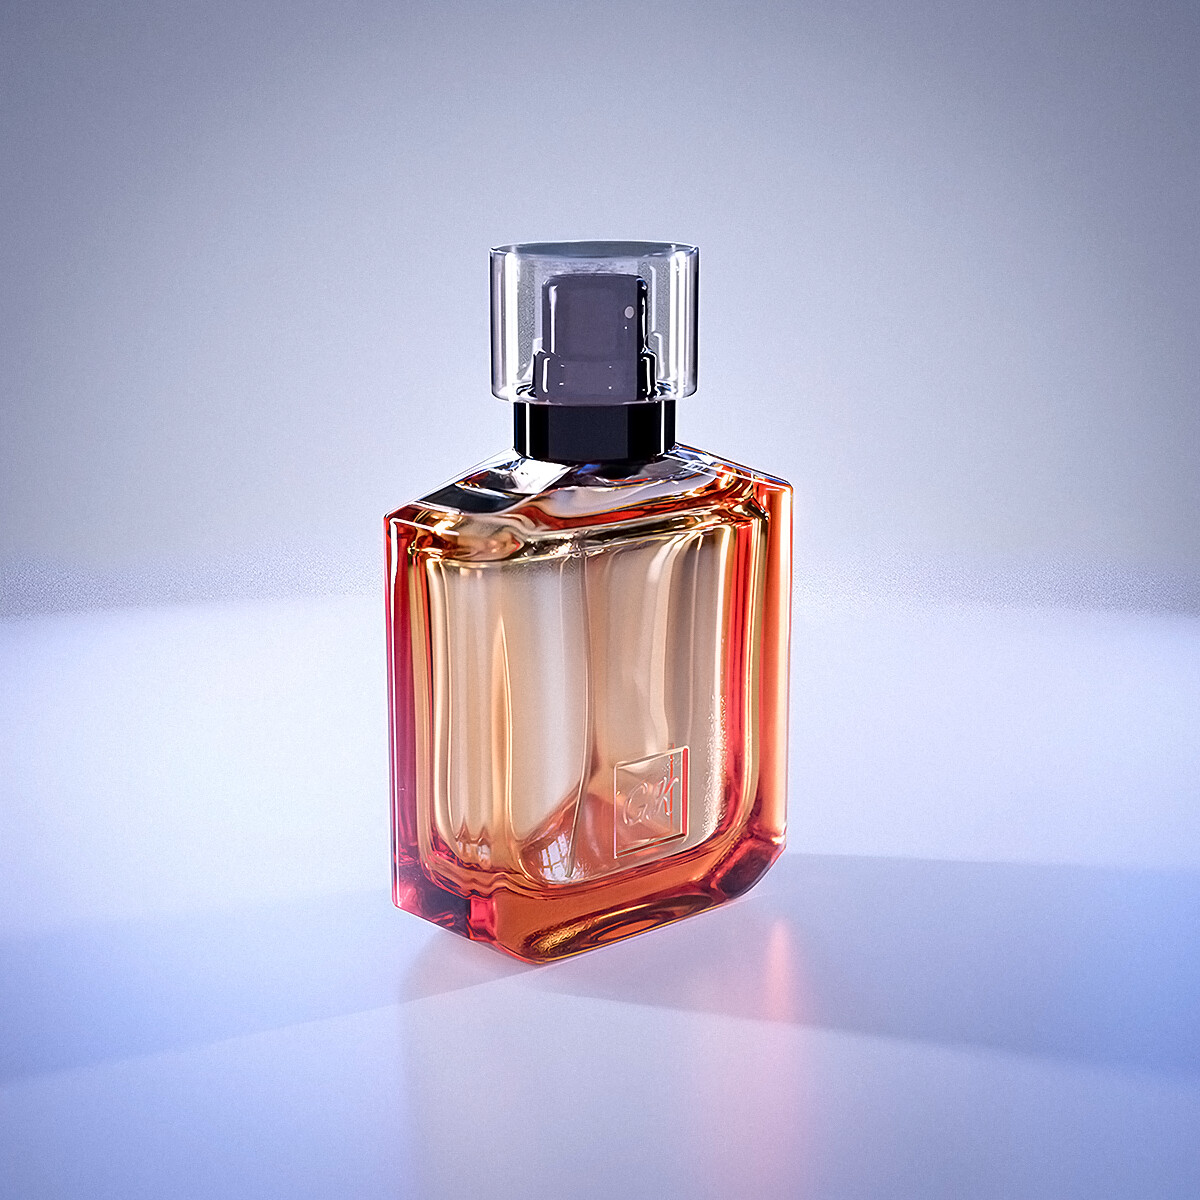 Perfume Bottle - Works in Progress - Blender Artists Community